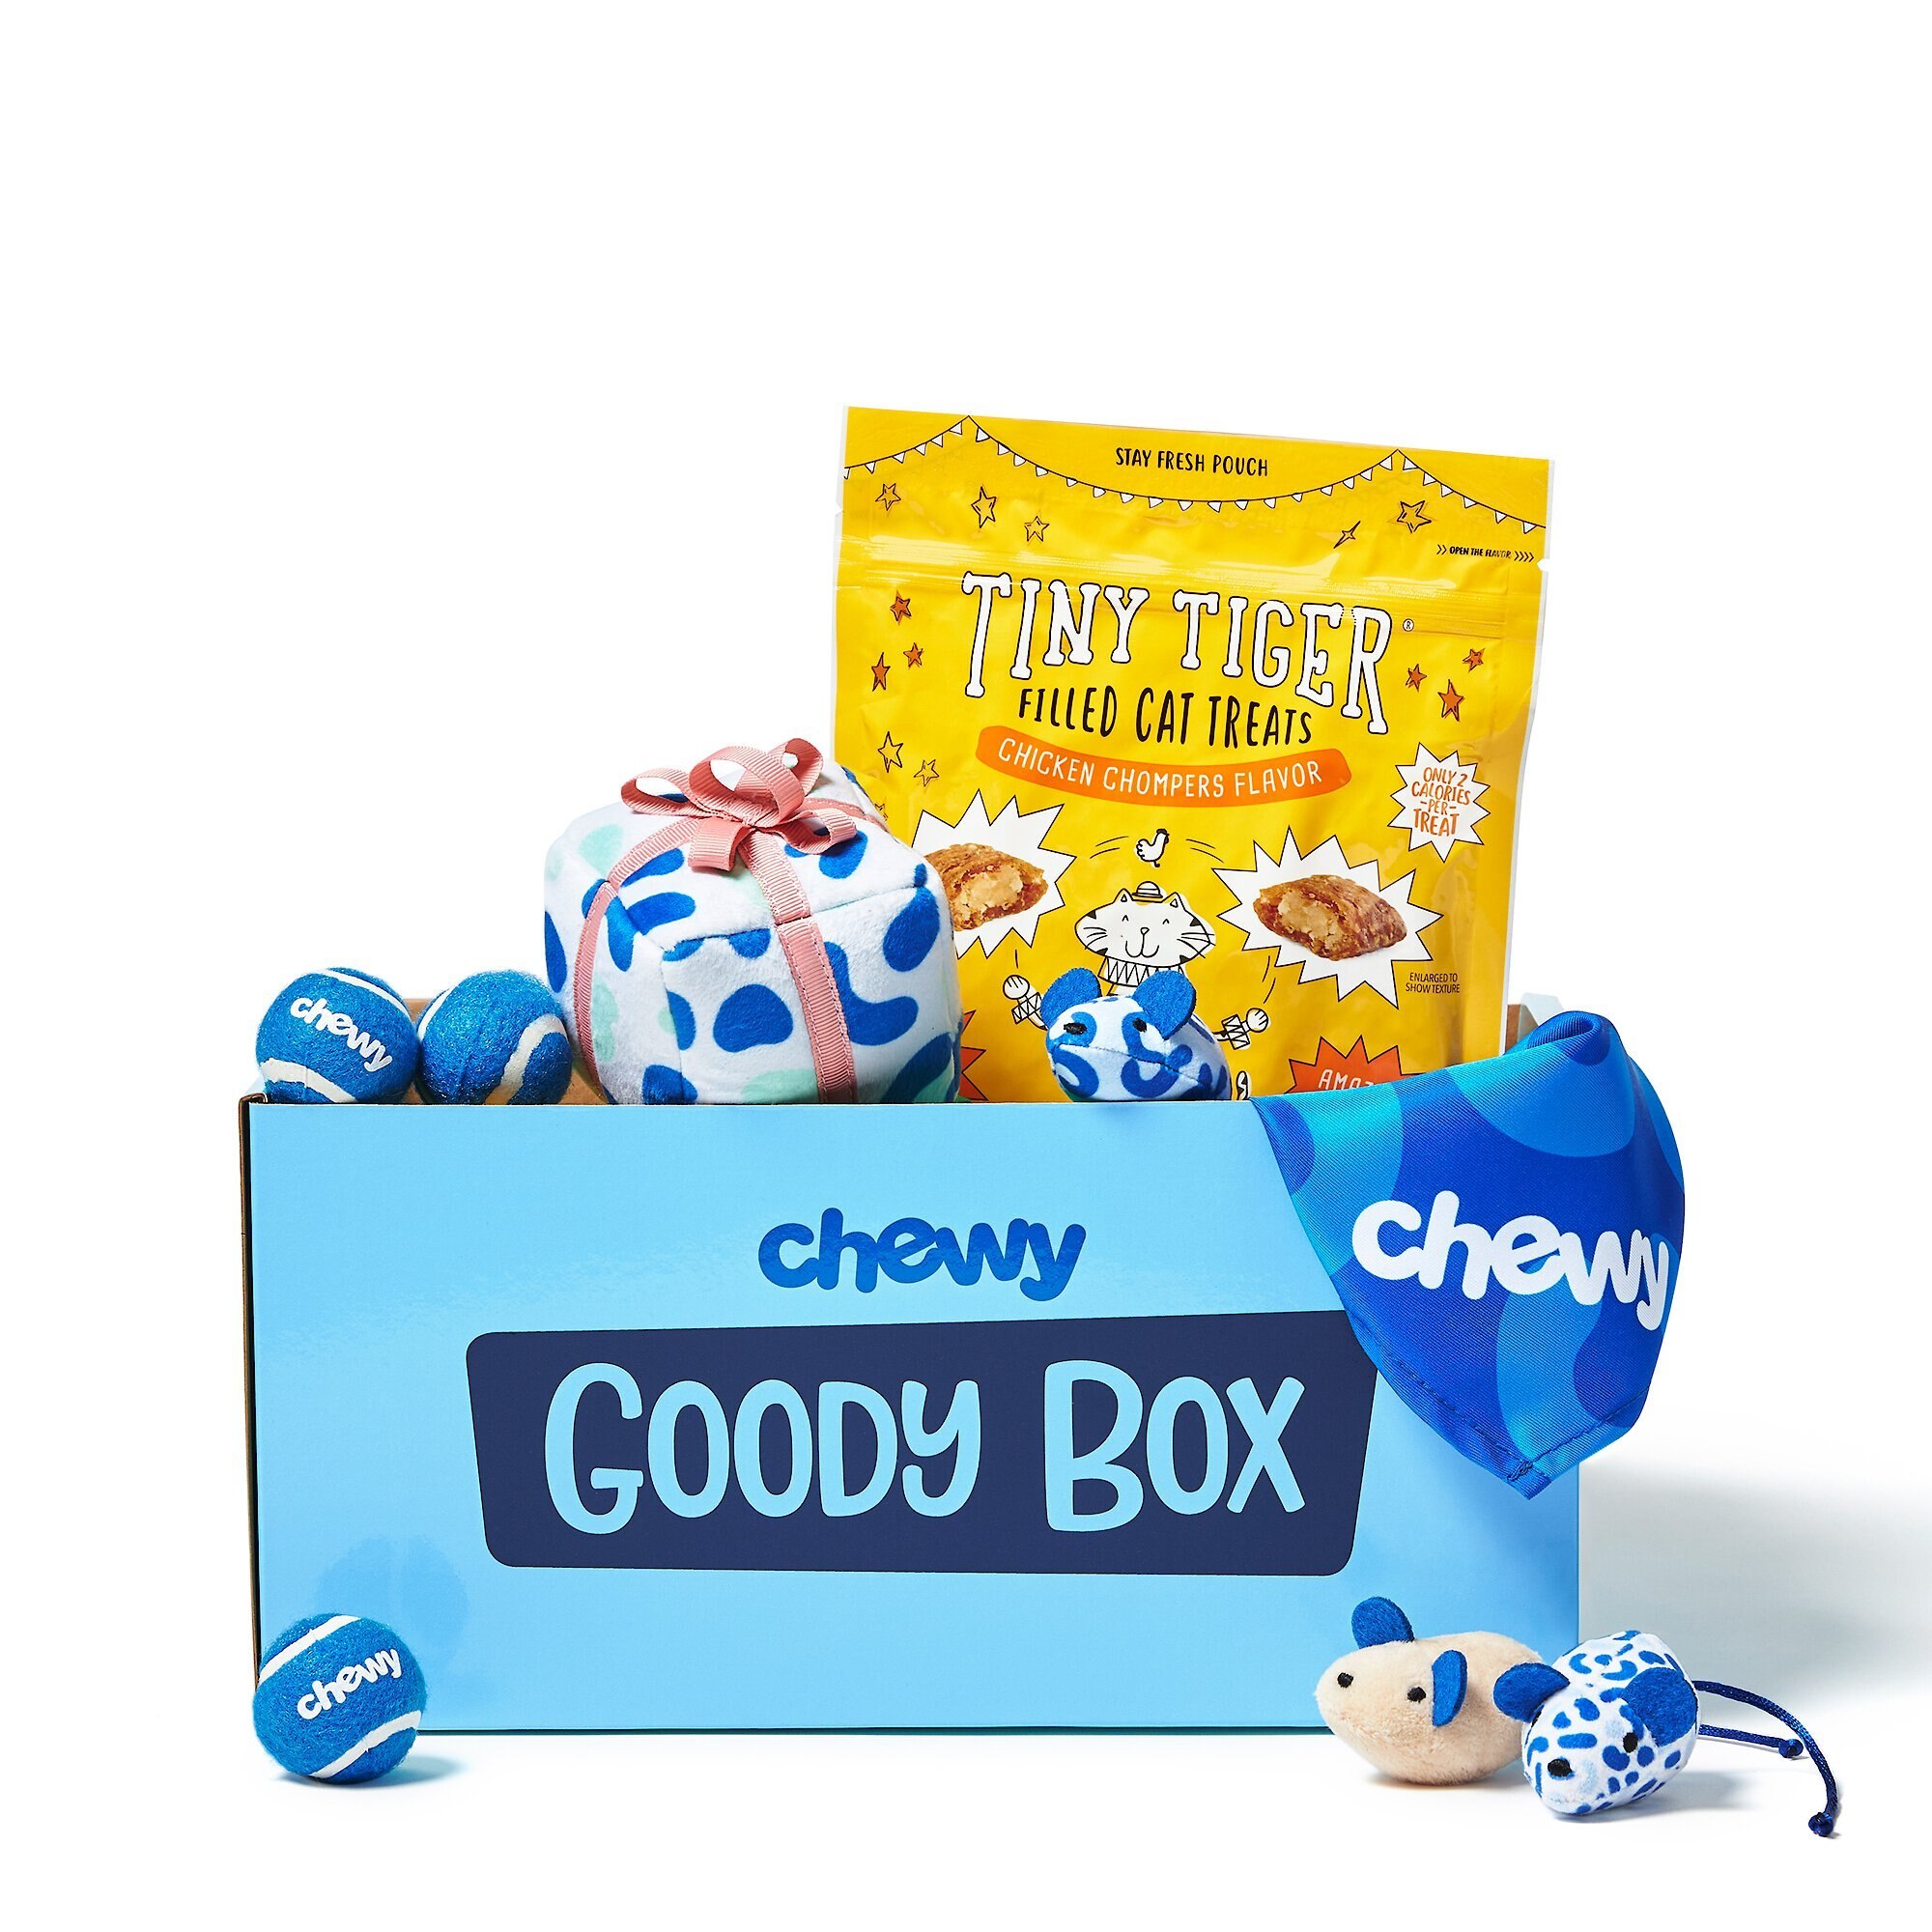 GOODY BOX Chewy Dog Toys, Treats, & Bandana reviews 